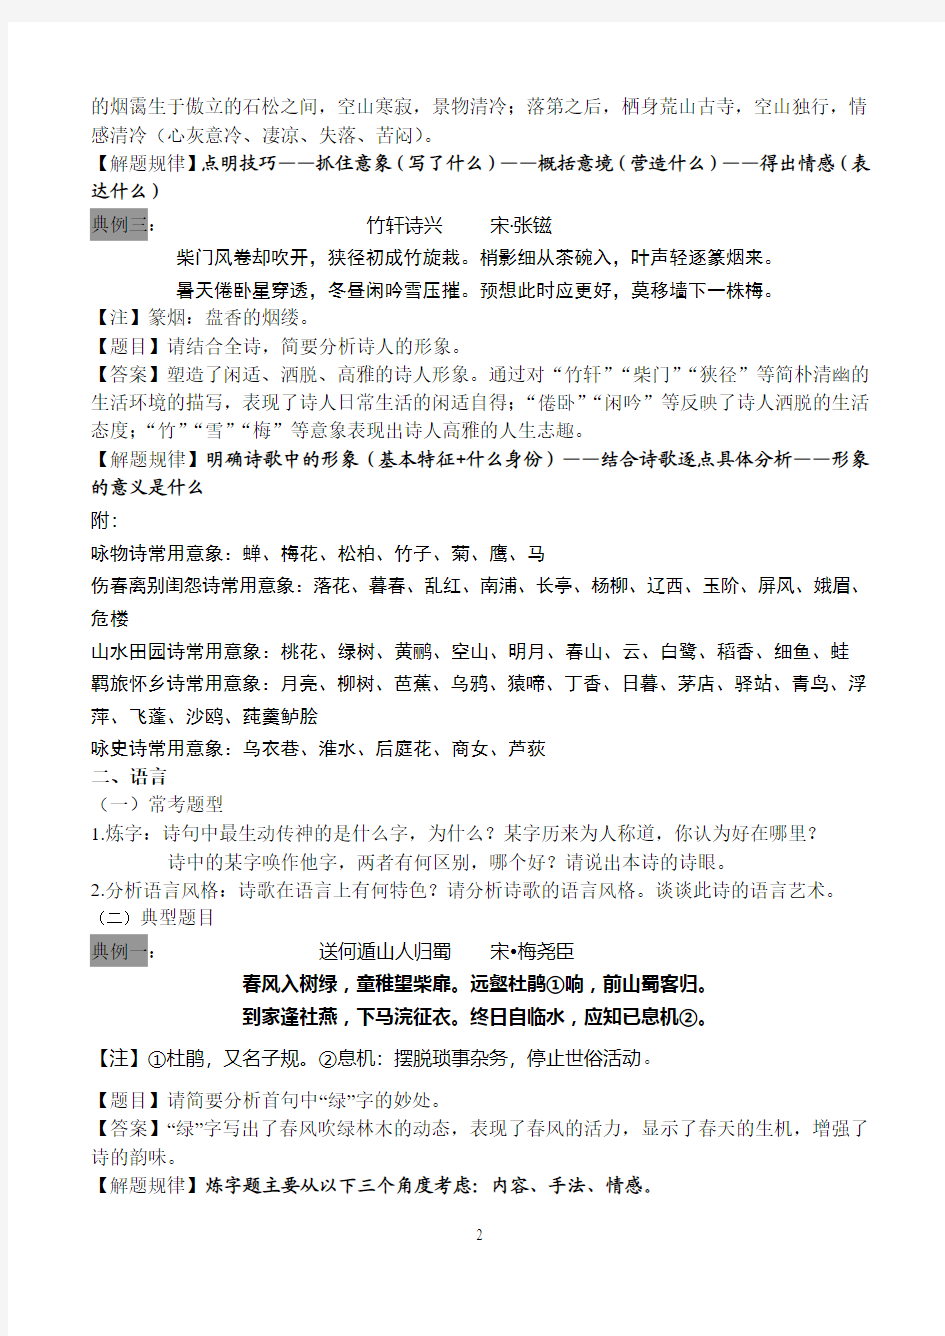 2015年江苏高考语文古典诗歌常考题型及应对策略(有答案)精华